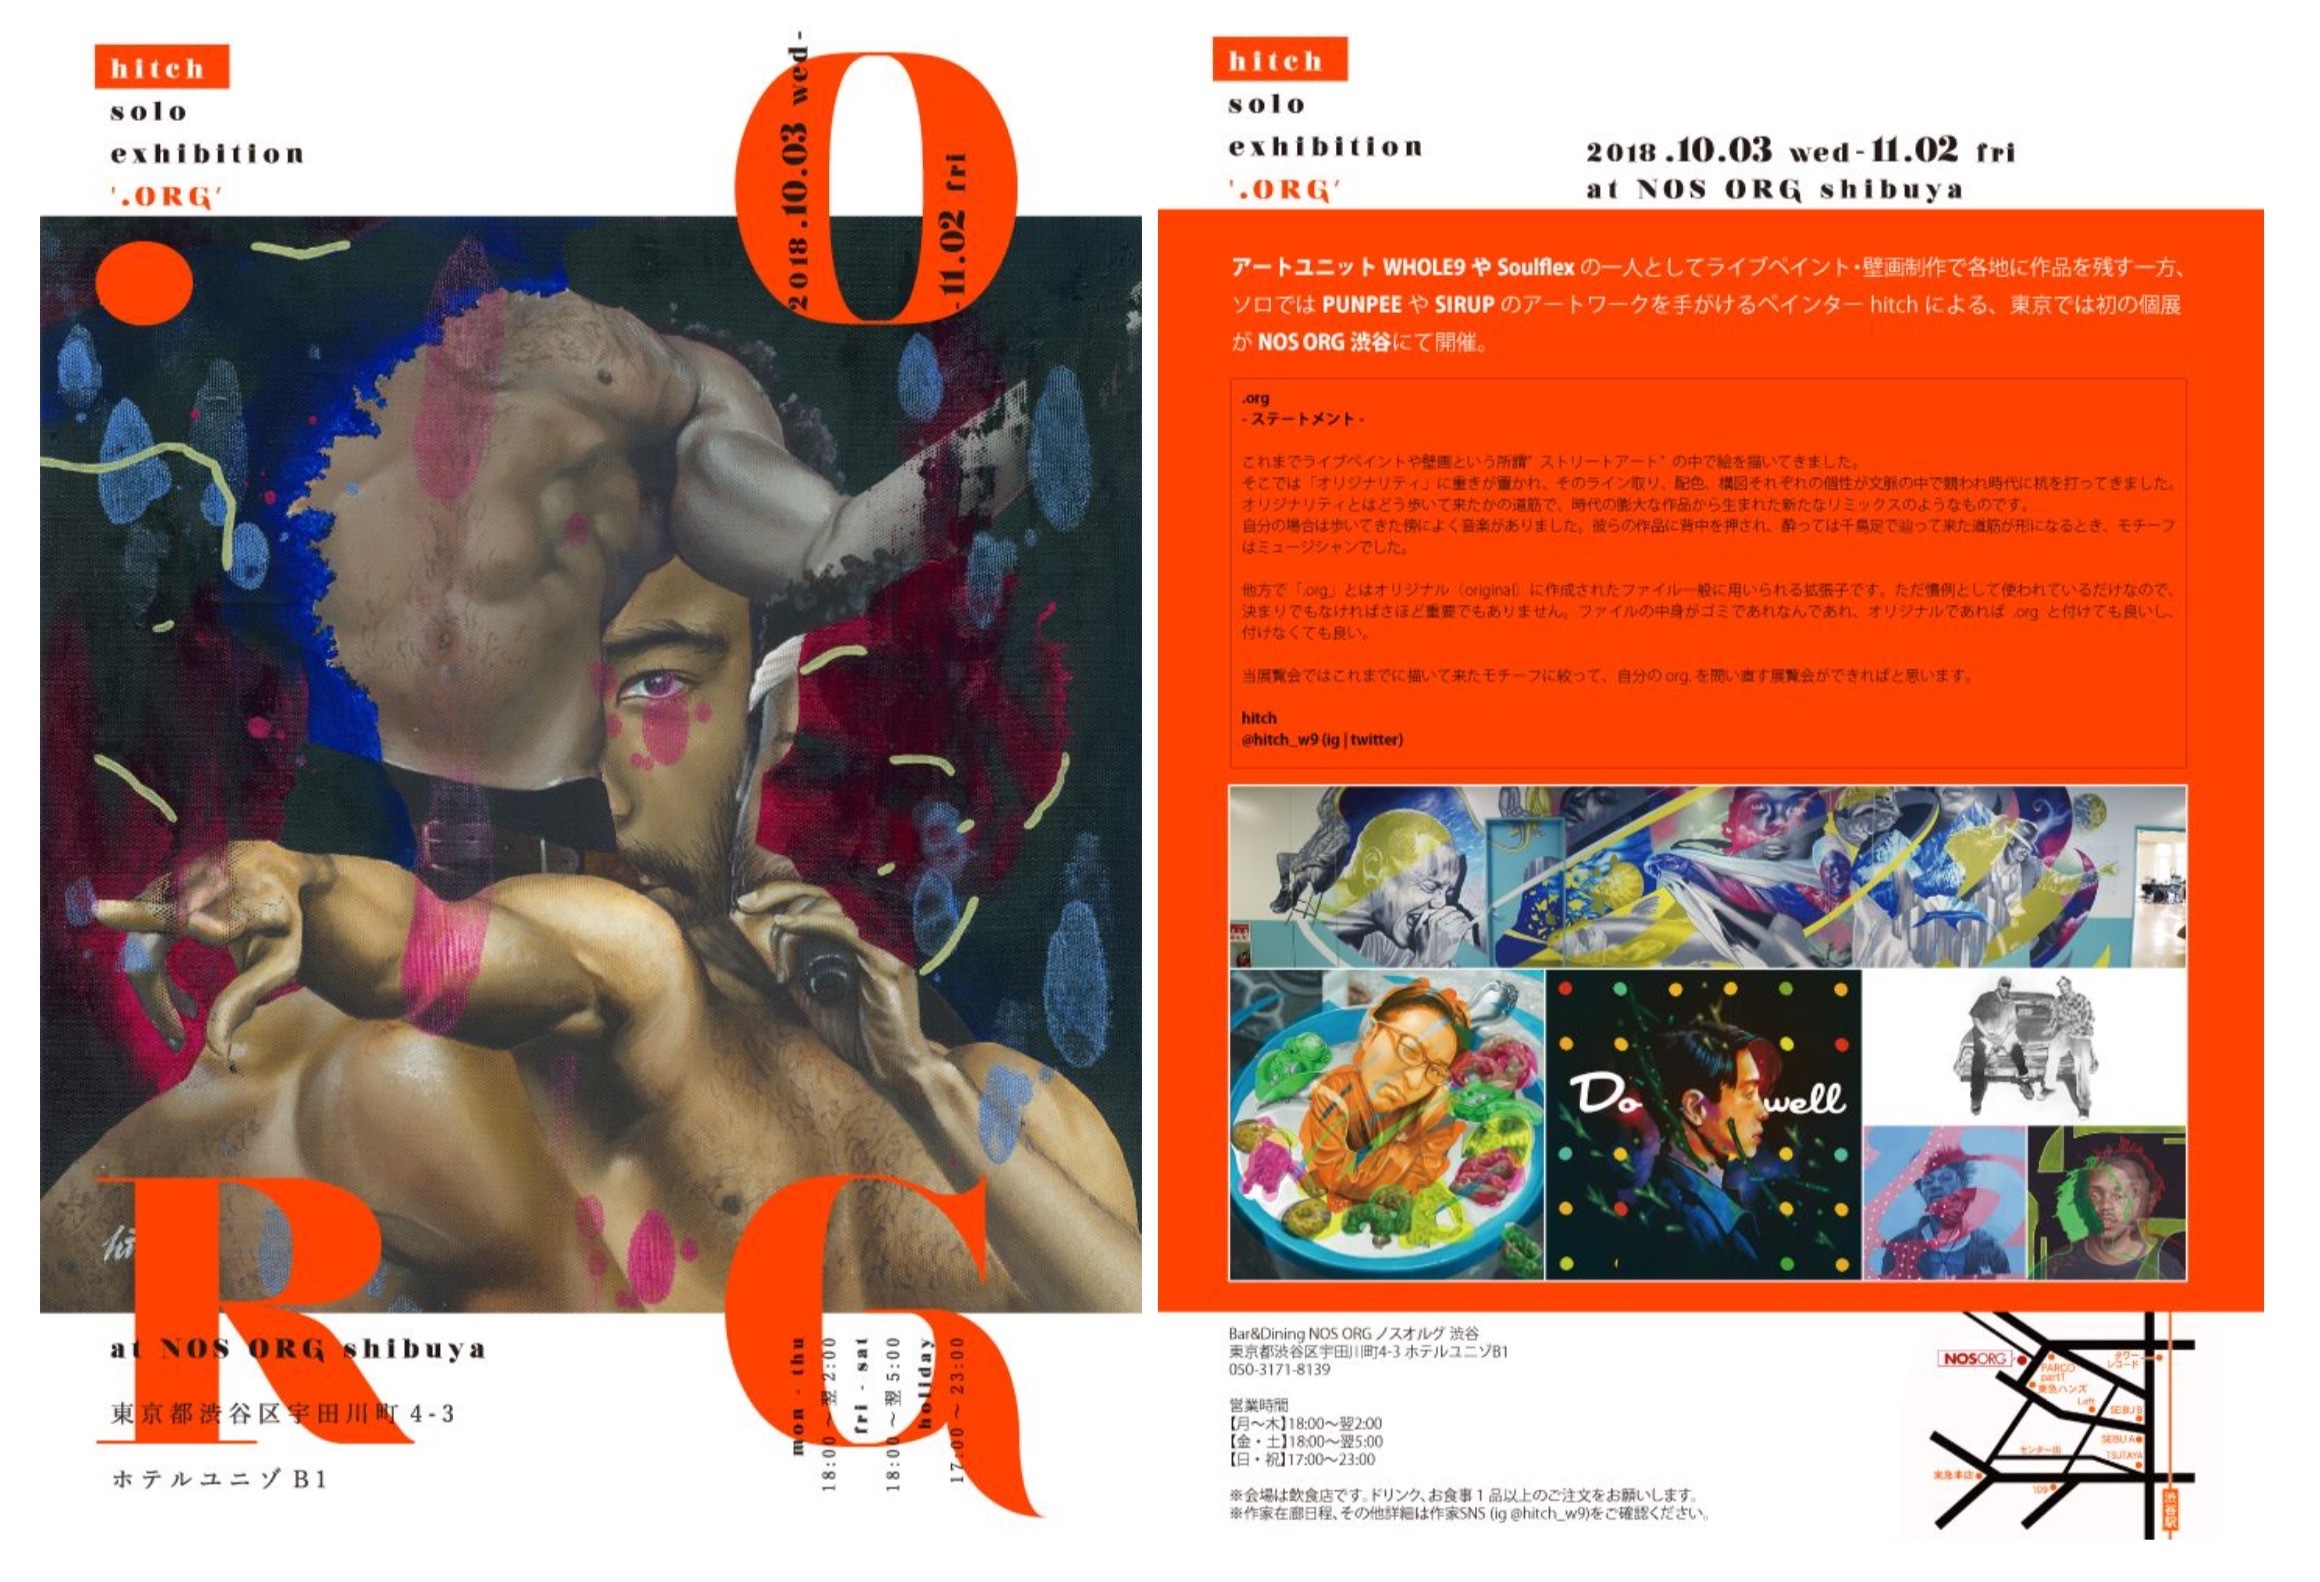 アートユニットWHOLE9やSOULFLEXの一人としてライブペイント・壁画制作で各地に作品を残す一方、 ソロではPUNPEEやSIRUPのアートワークを手がけるペインターHITCHによる、東京では初の個展がNOS ORG渋谷にて開催。